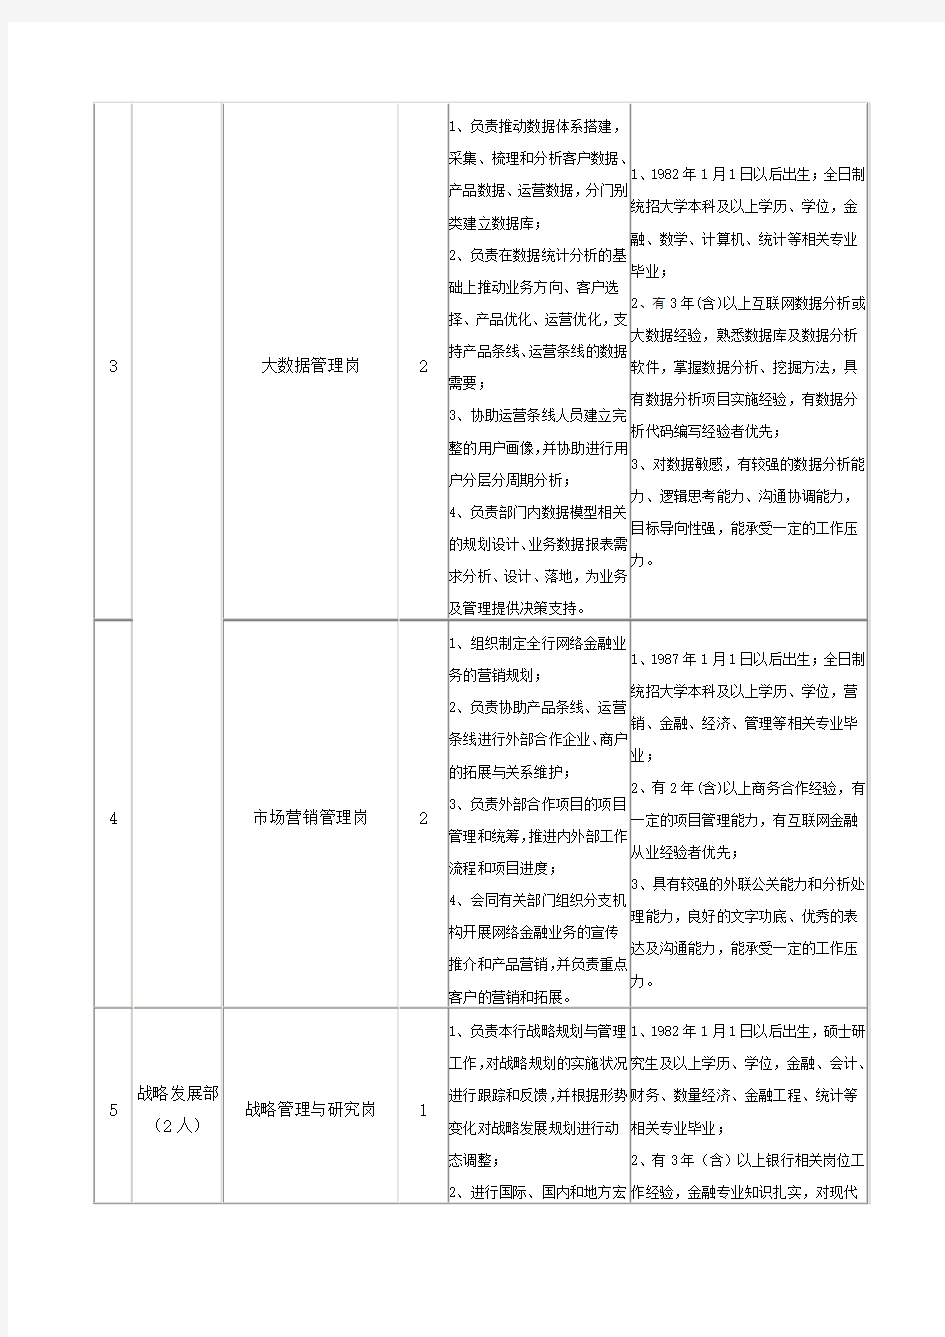 大连农商银行2017年秋季招聘岗位一览表(一)